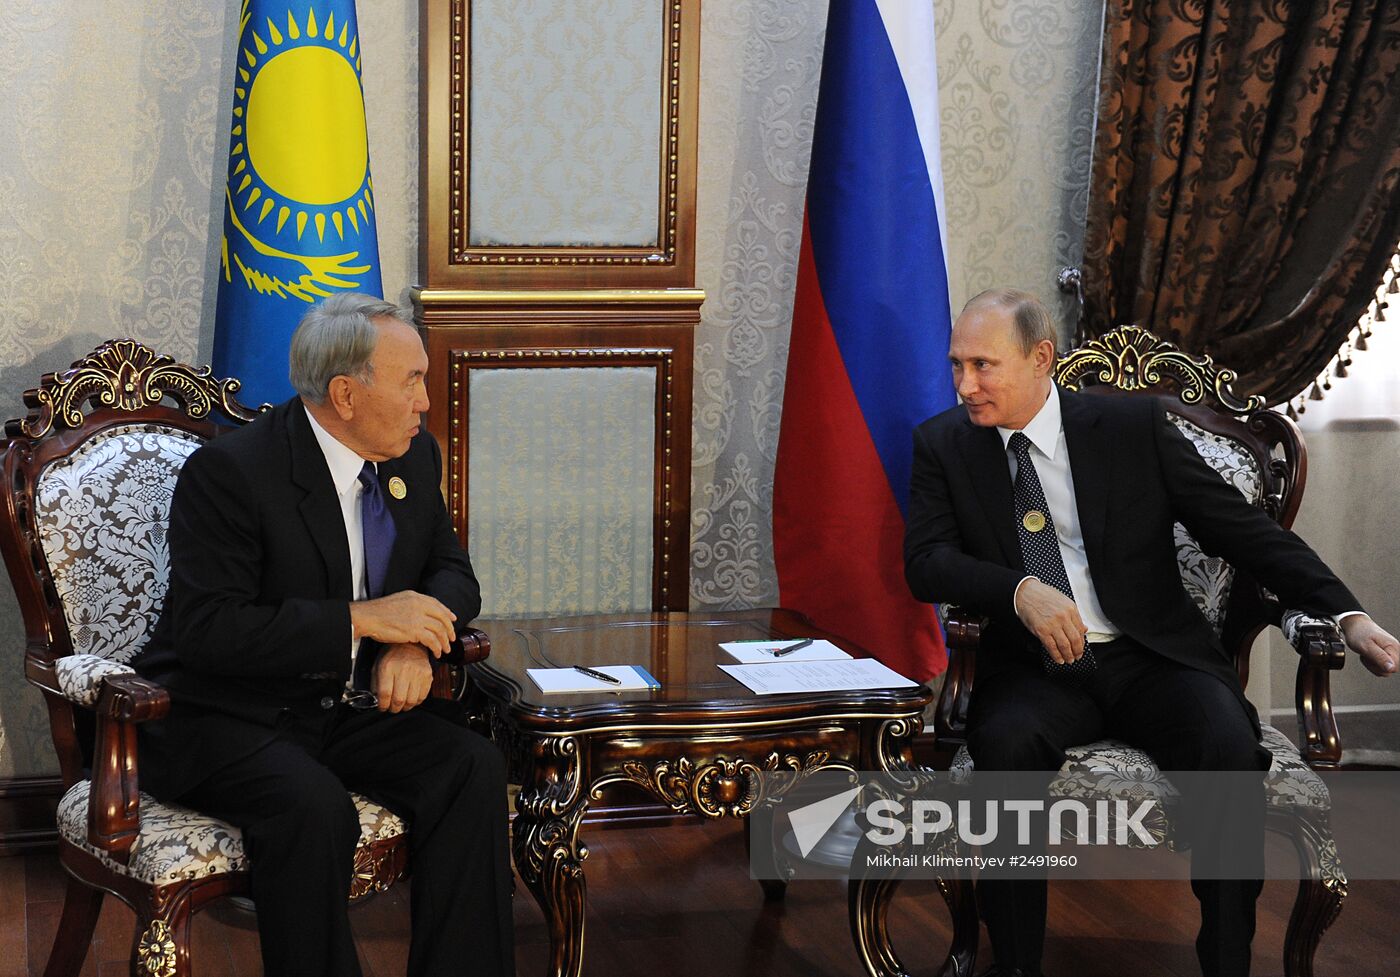 Vladimir Putin attends SCO summit in Dushanbe